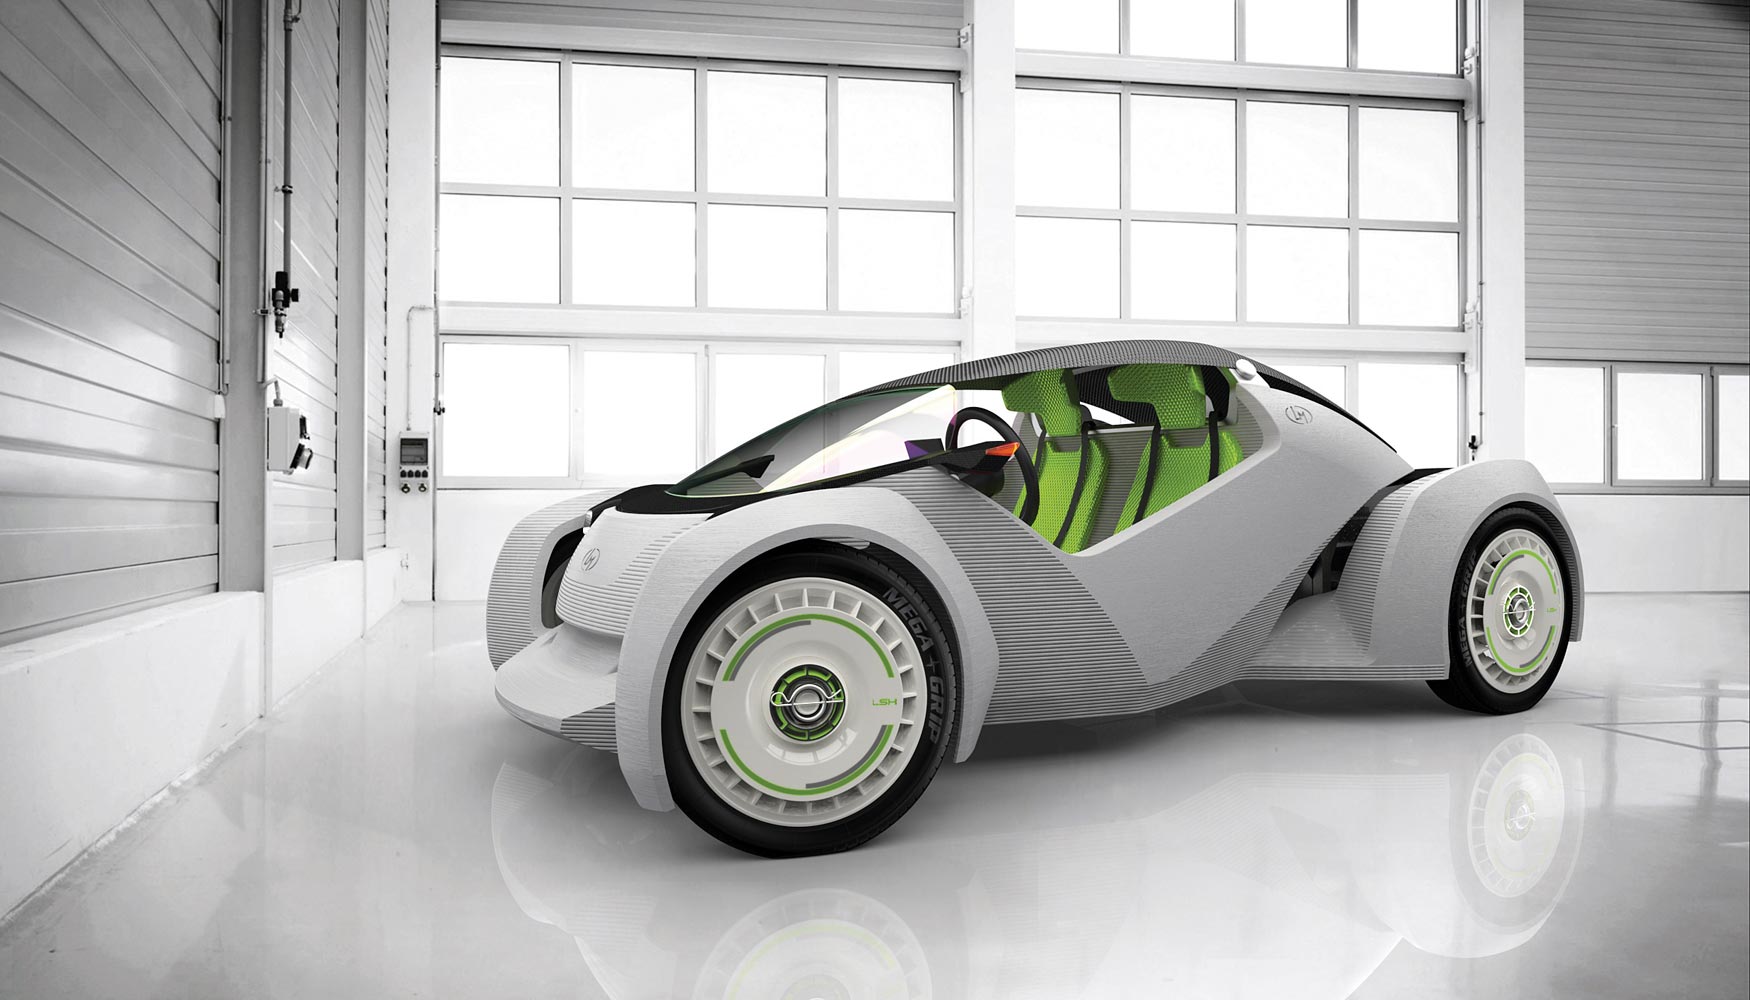 Hemos desarrollado el primer vehculo co-creado del mundo y el primer coche impreso en 3D, explica Jay Rogers, CEO de Local Motors...